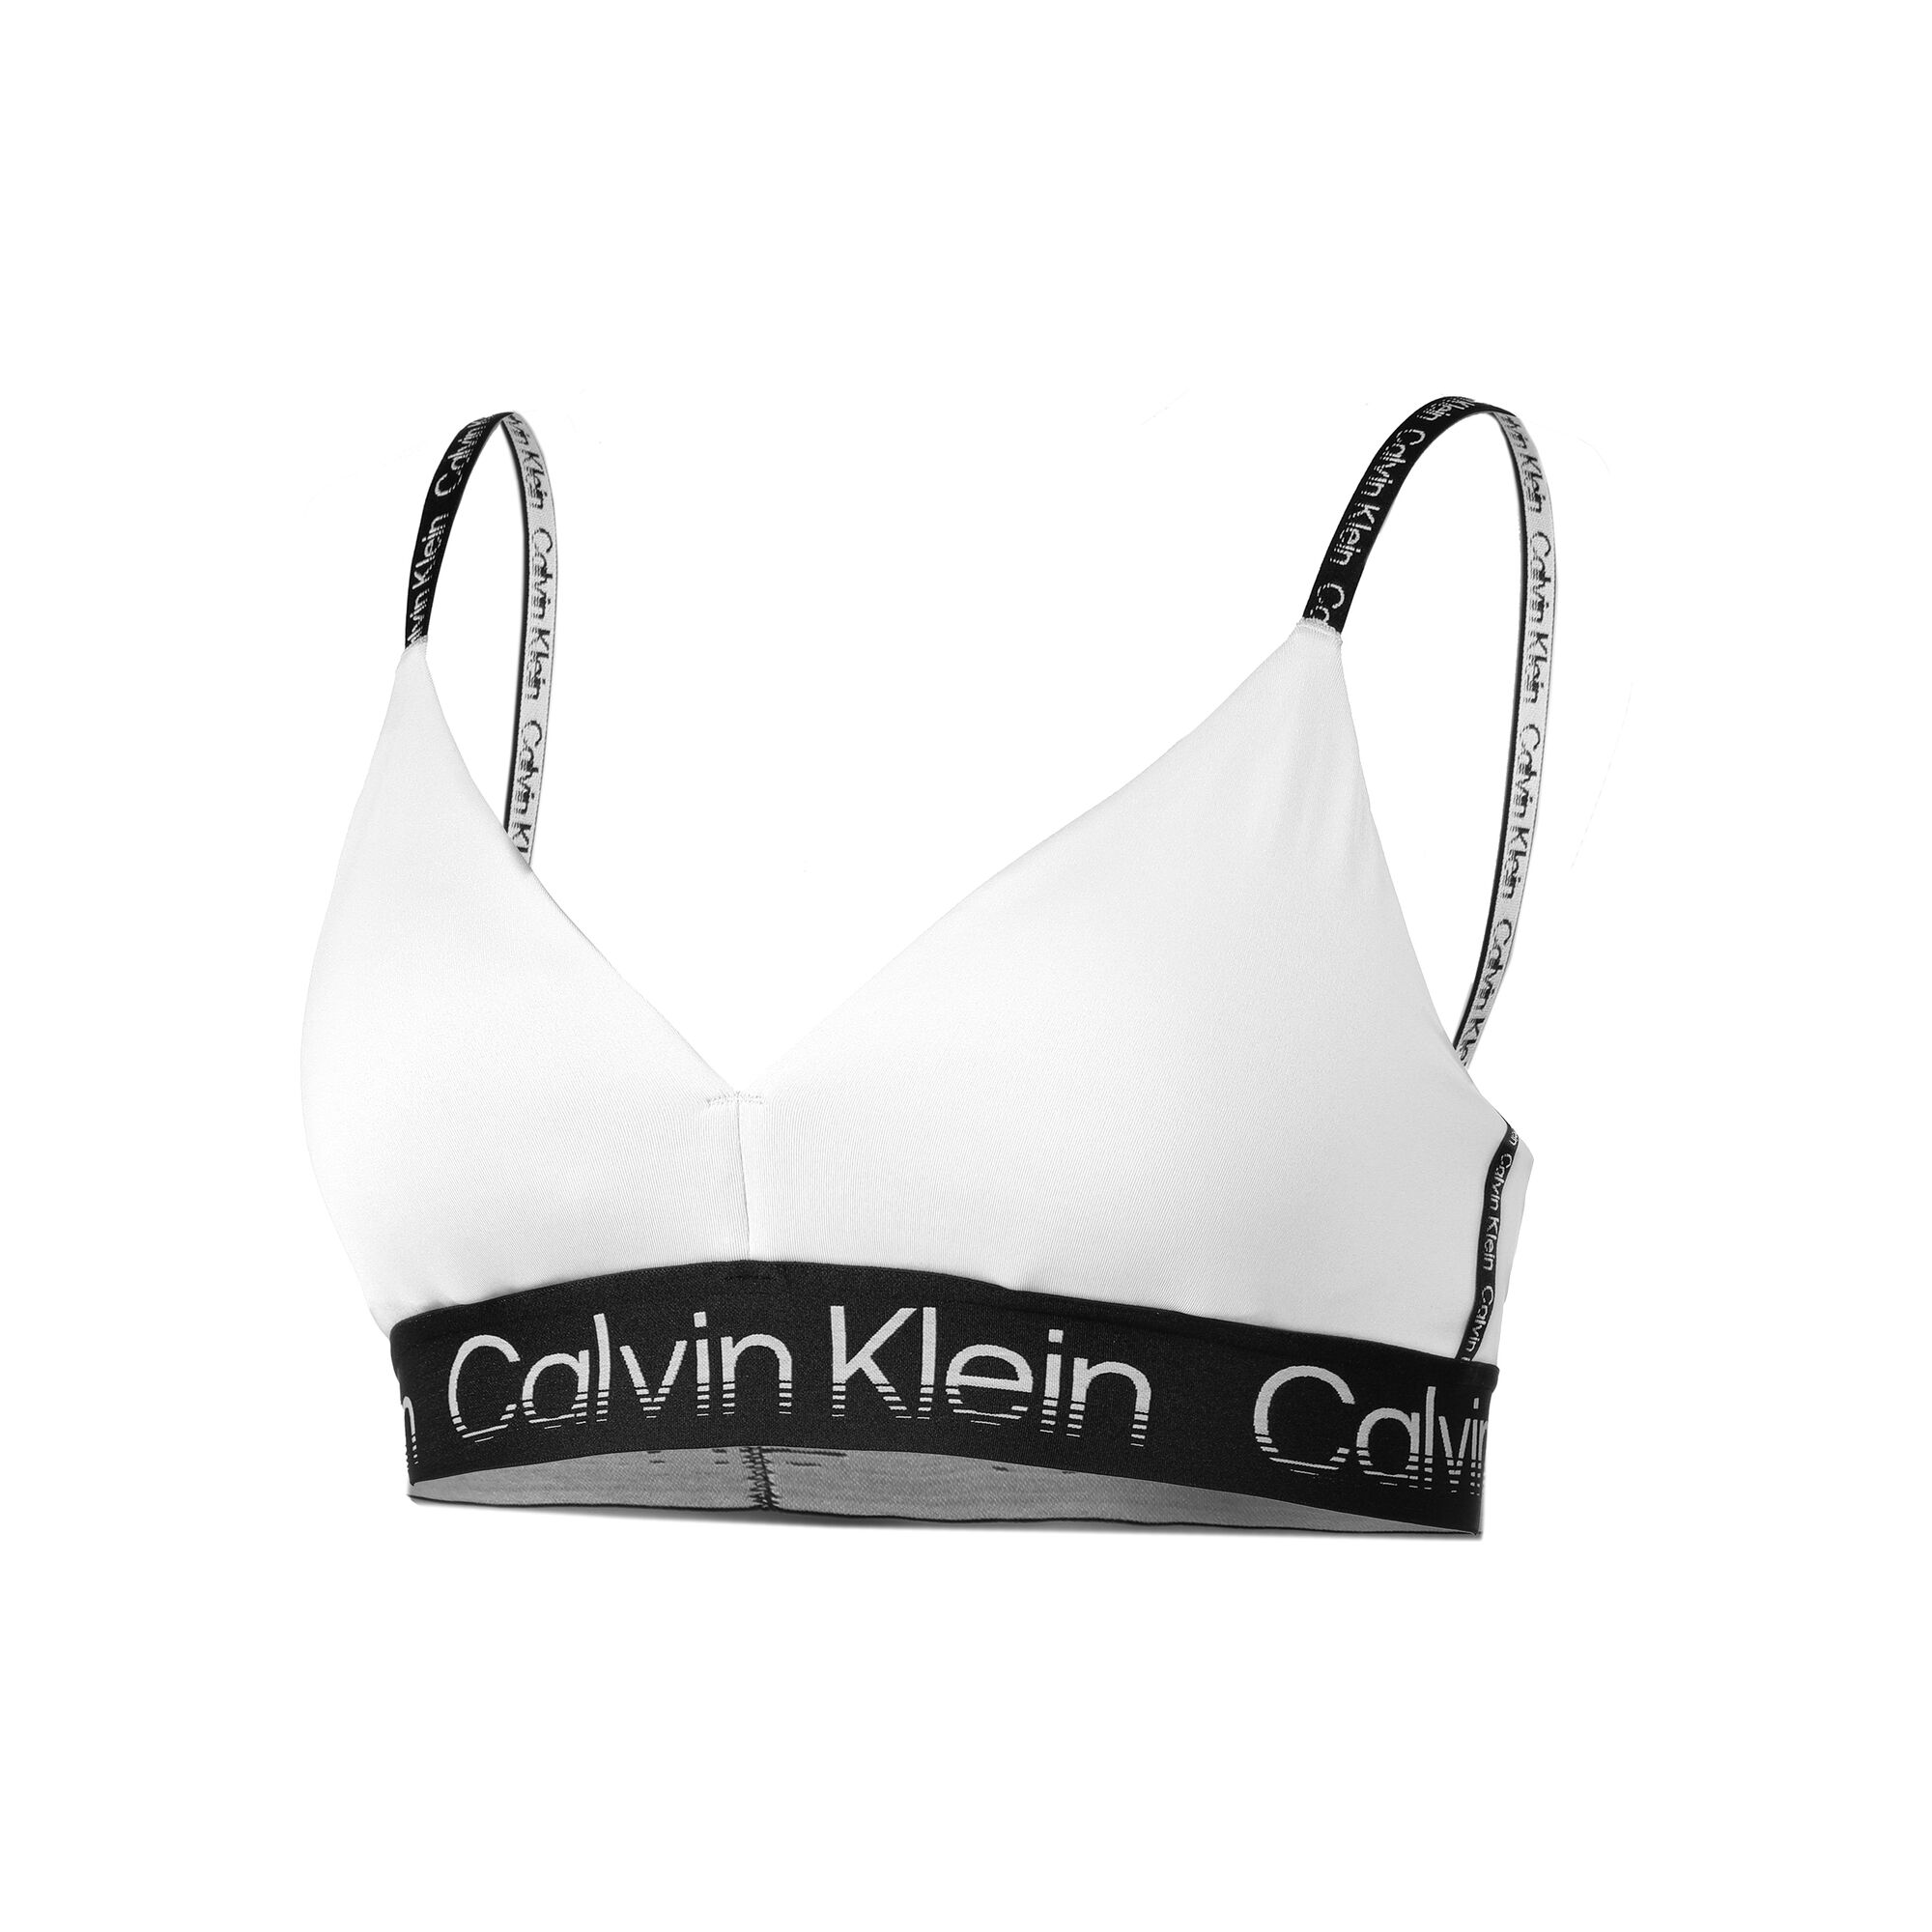 buy Calvin Klein Low Support Sports Bras Women - White online | Tennis-Point